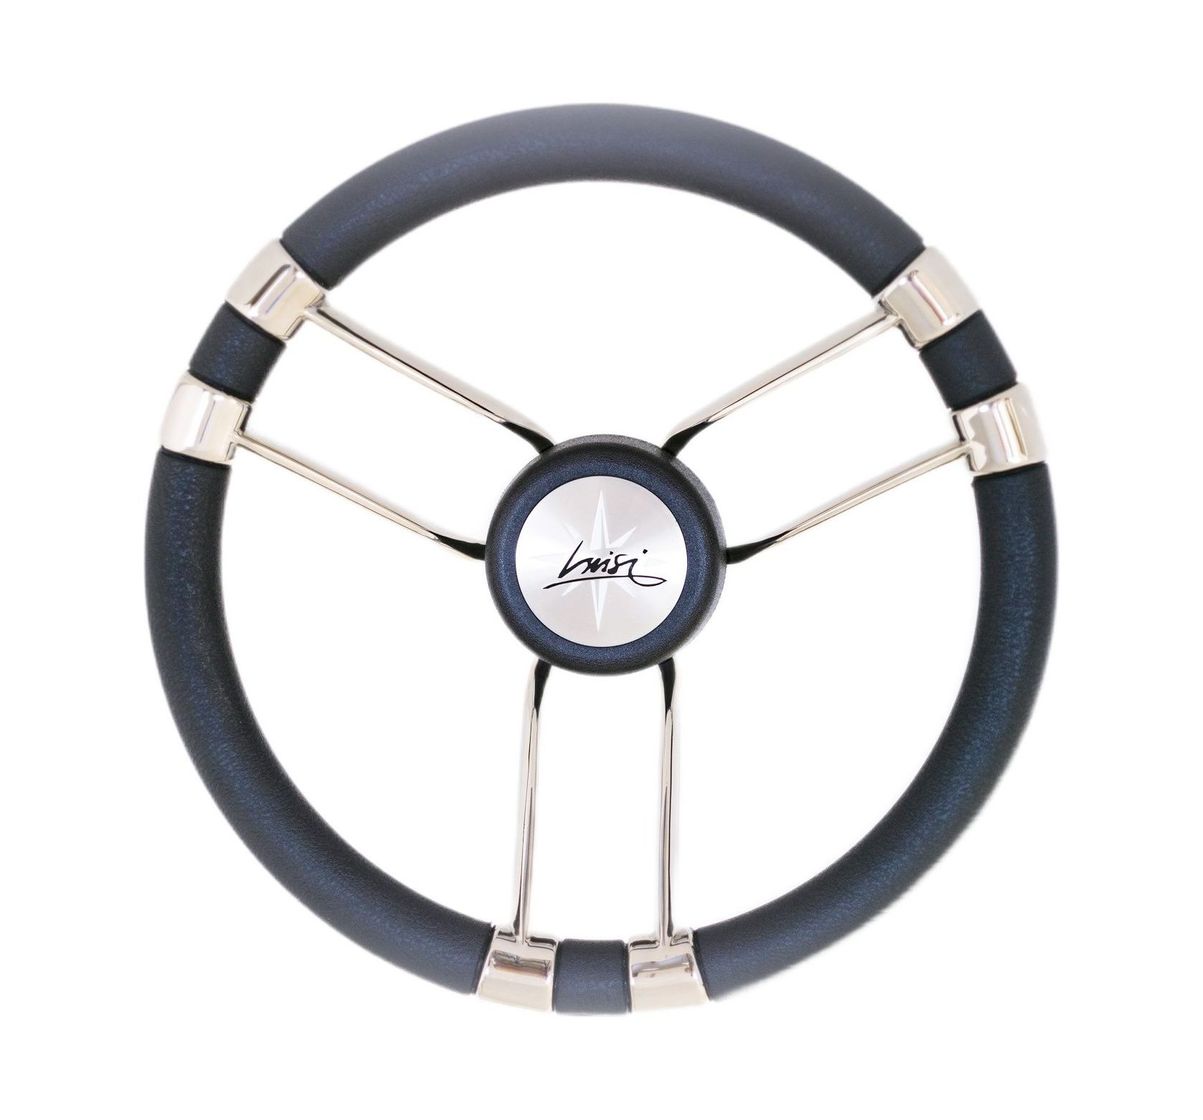 Рулевое колесо NESEA обод черный, спицы серебряные Volanti Luisi VN123522-01